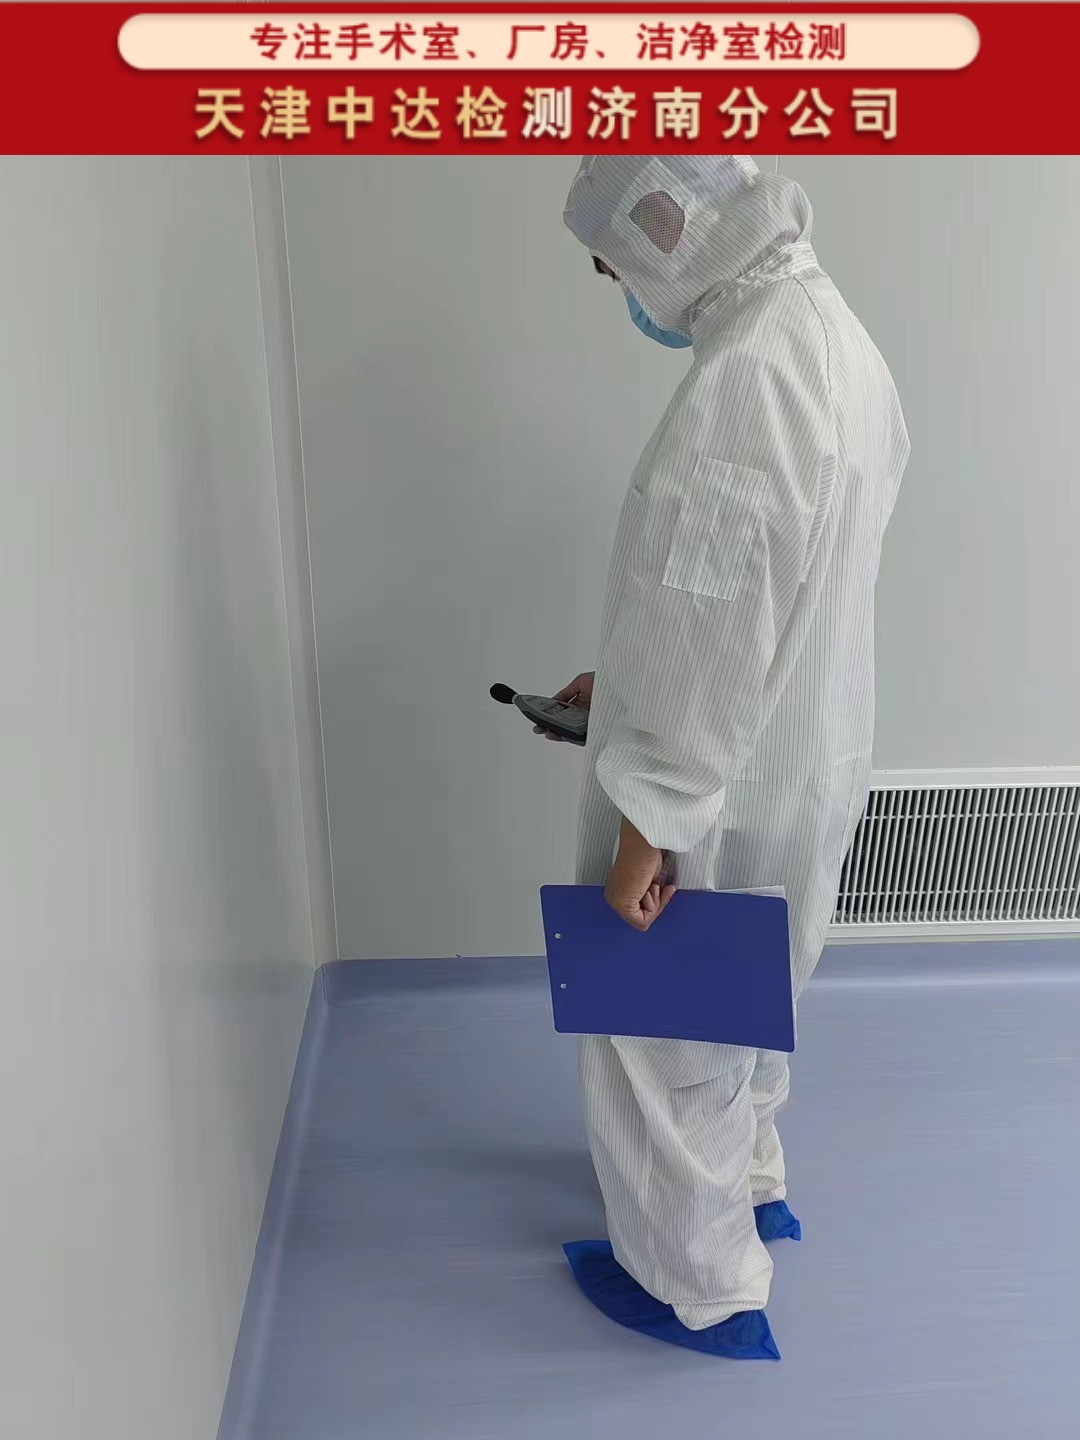 青岛西海岸新区百级手术室洁净工程检测技术-天津中达检测济南分公司